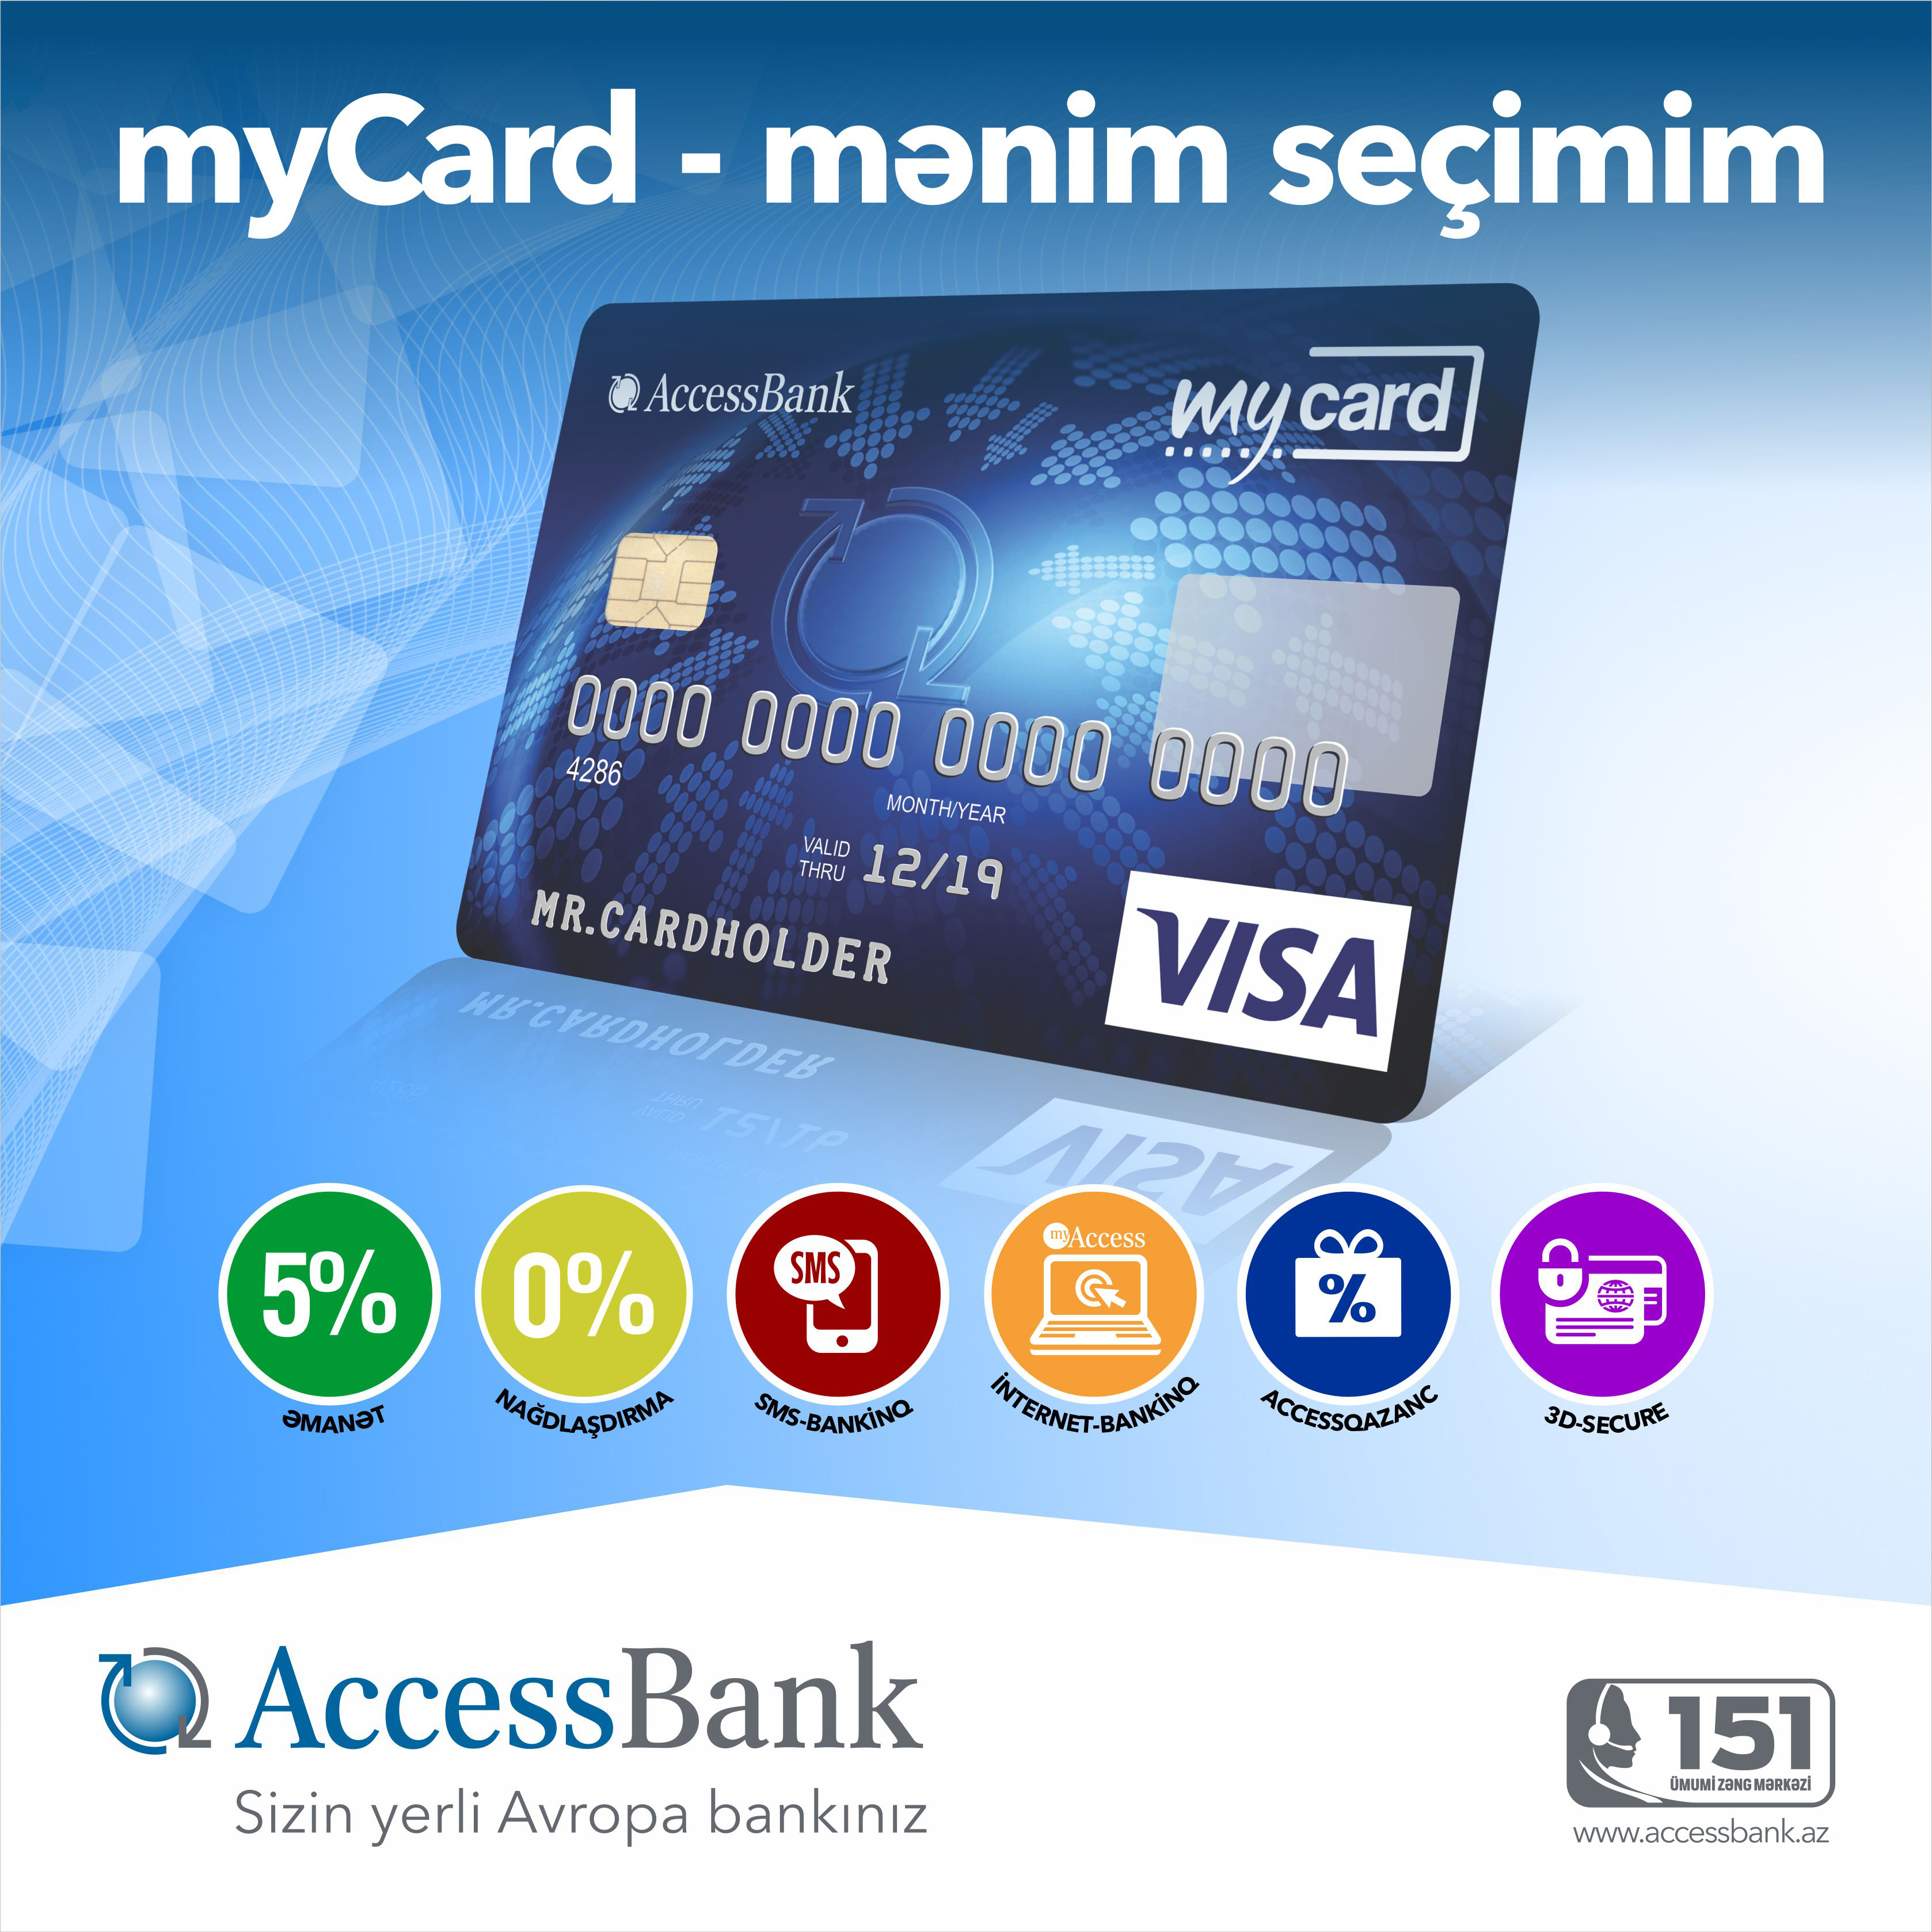 AccessBank-ın təklif etdiyi myCard indi daha da cəlbedici oldu